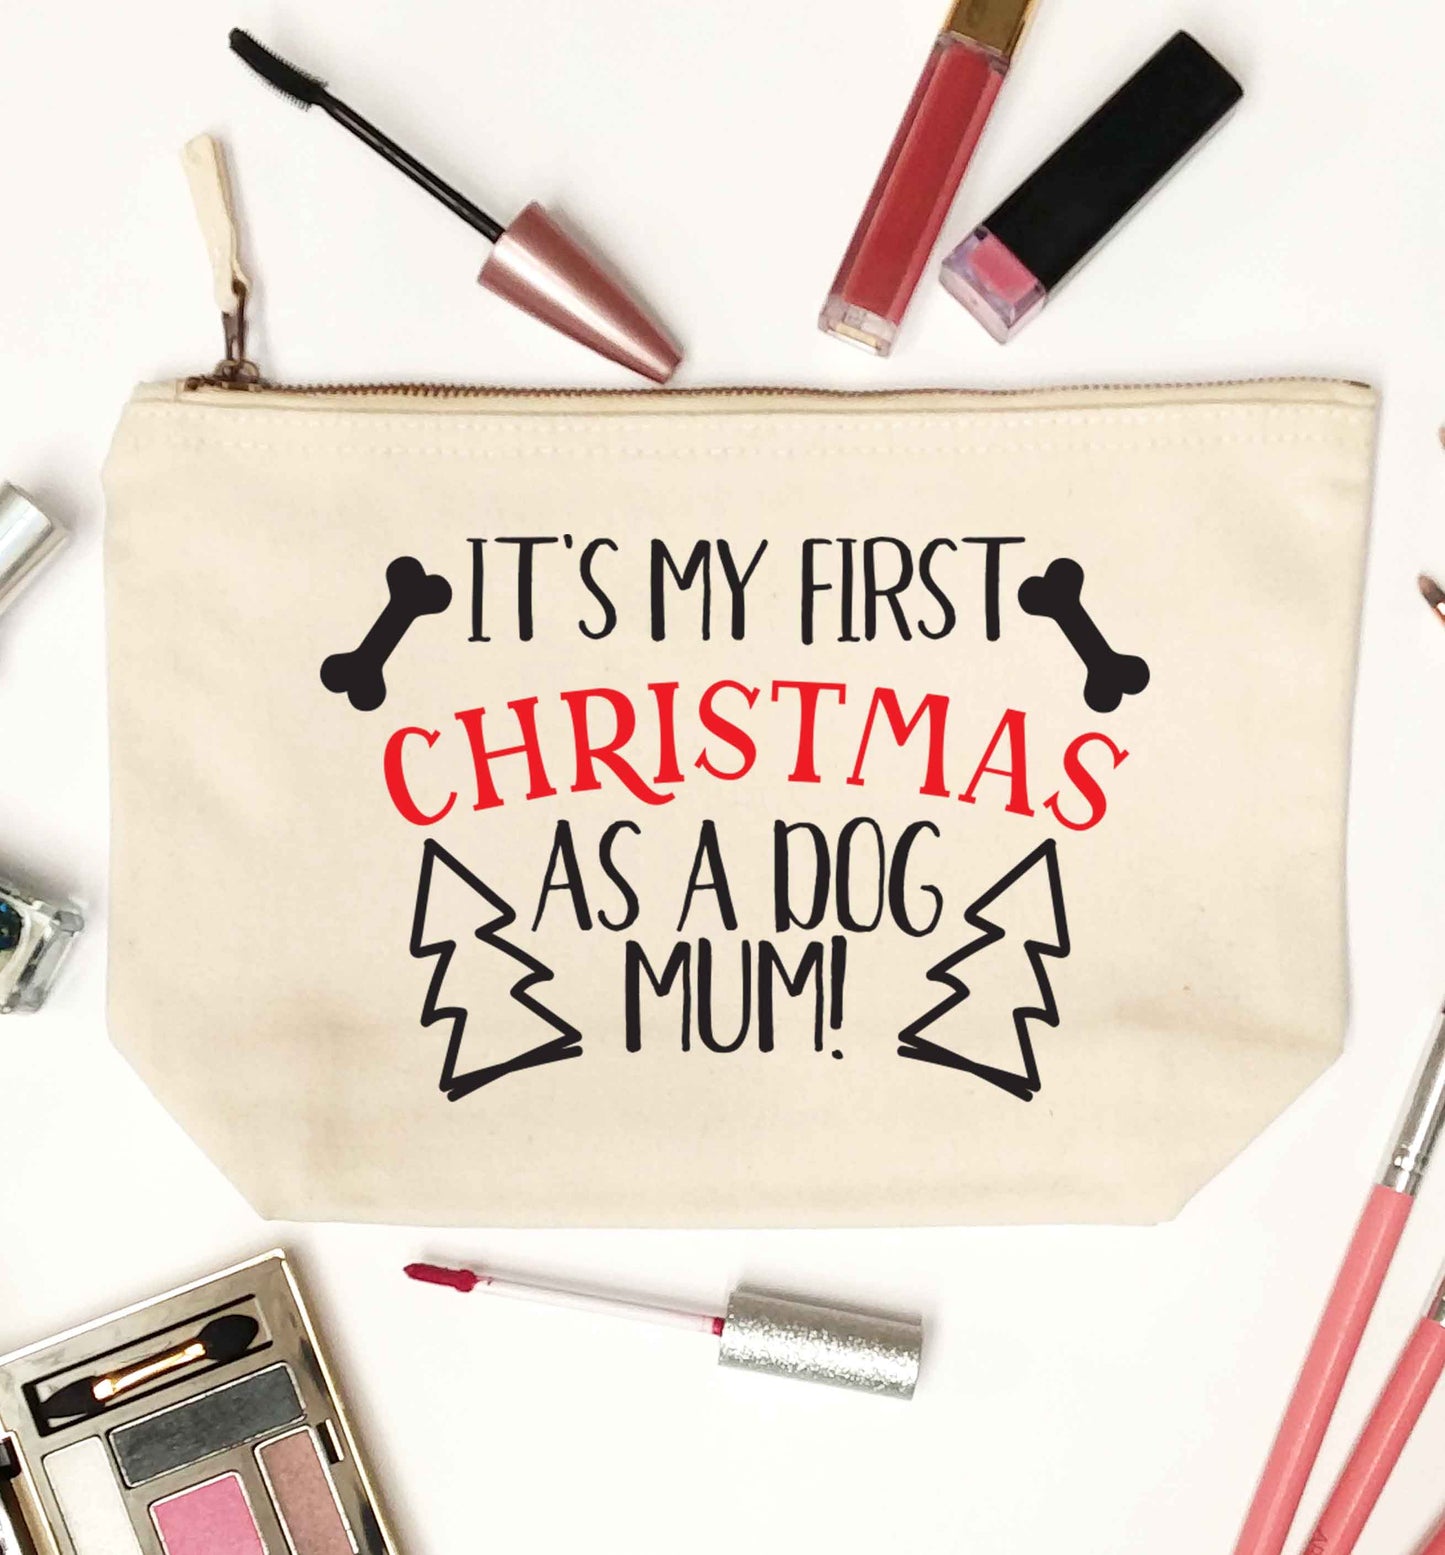 It's my first Christmas as a dog mum! natural makeup bag